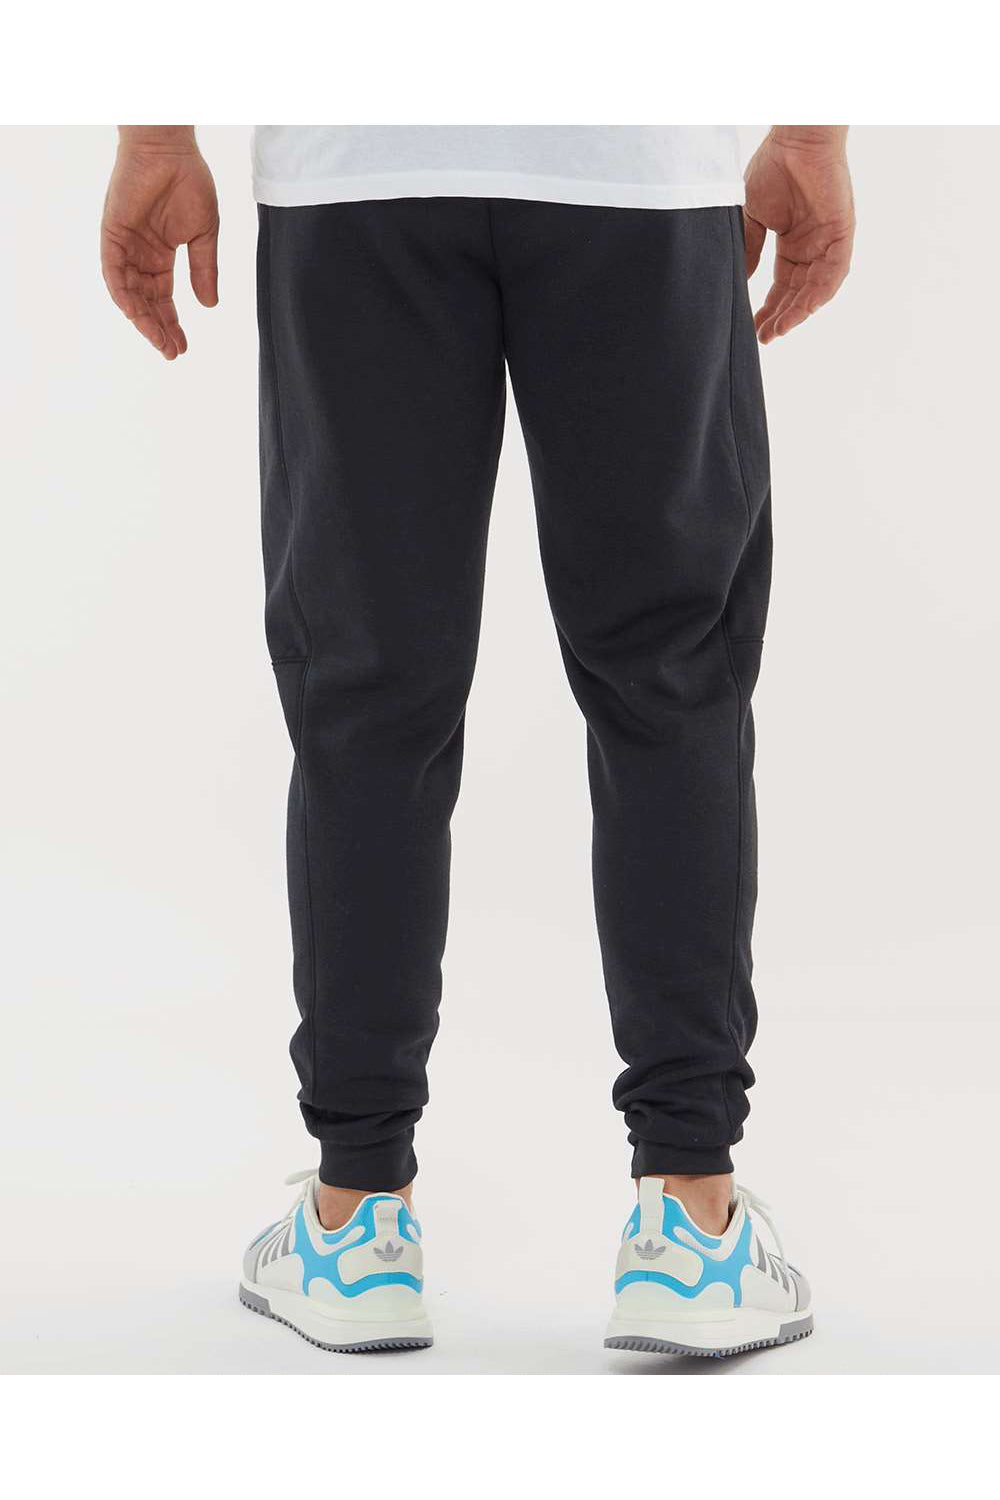 Augusta Sportswear 6868 Mens Eco Revive 3 Season Fleece Jogger Sweatpants w/ Pockets Black Model Back